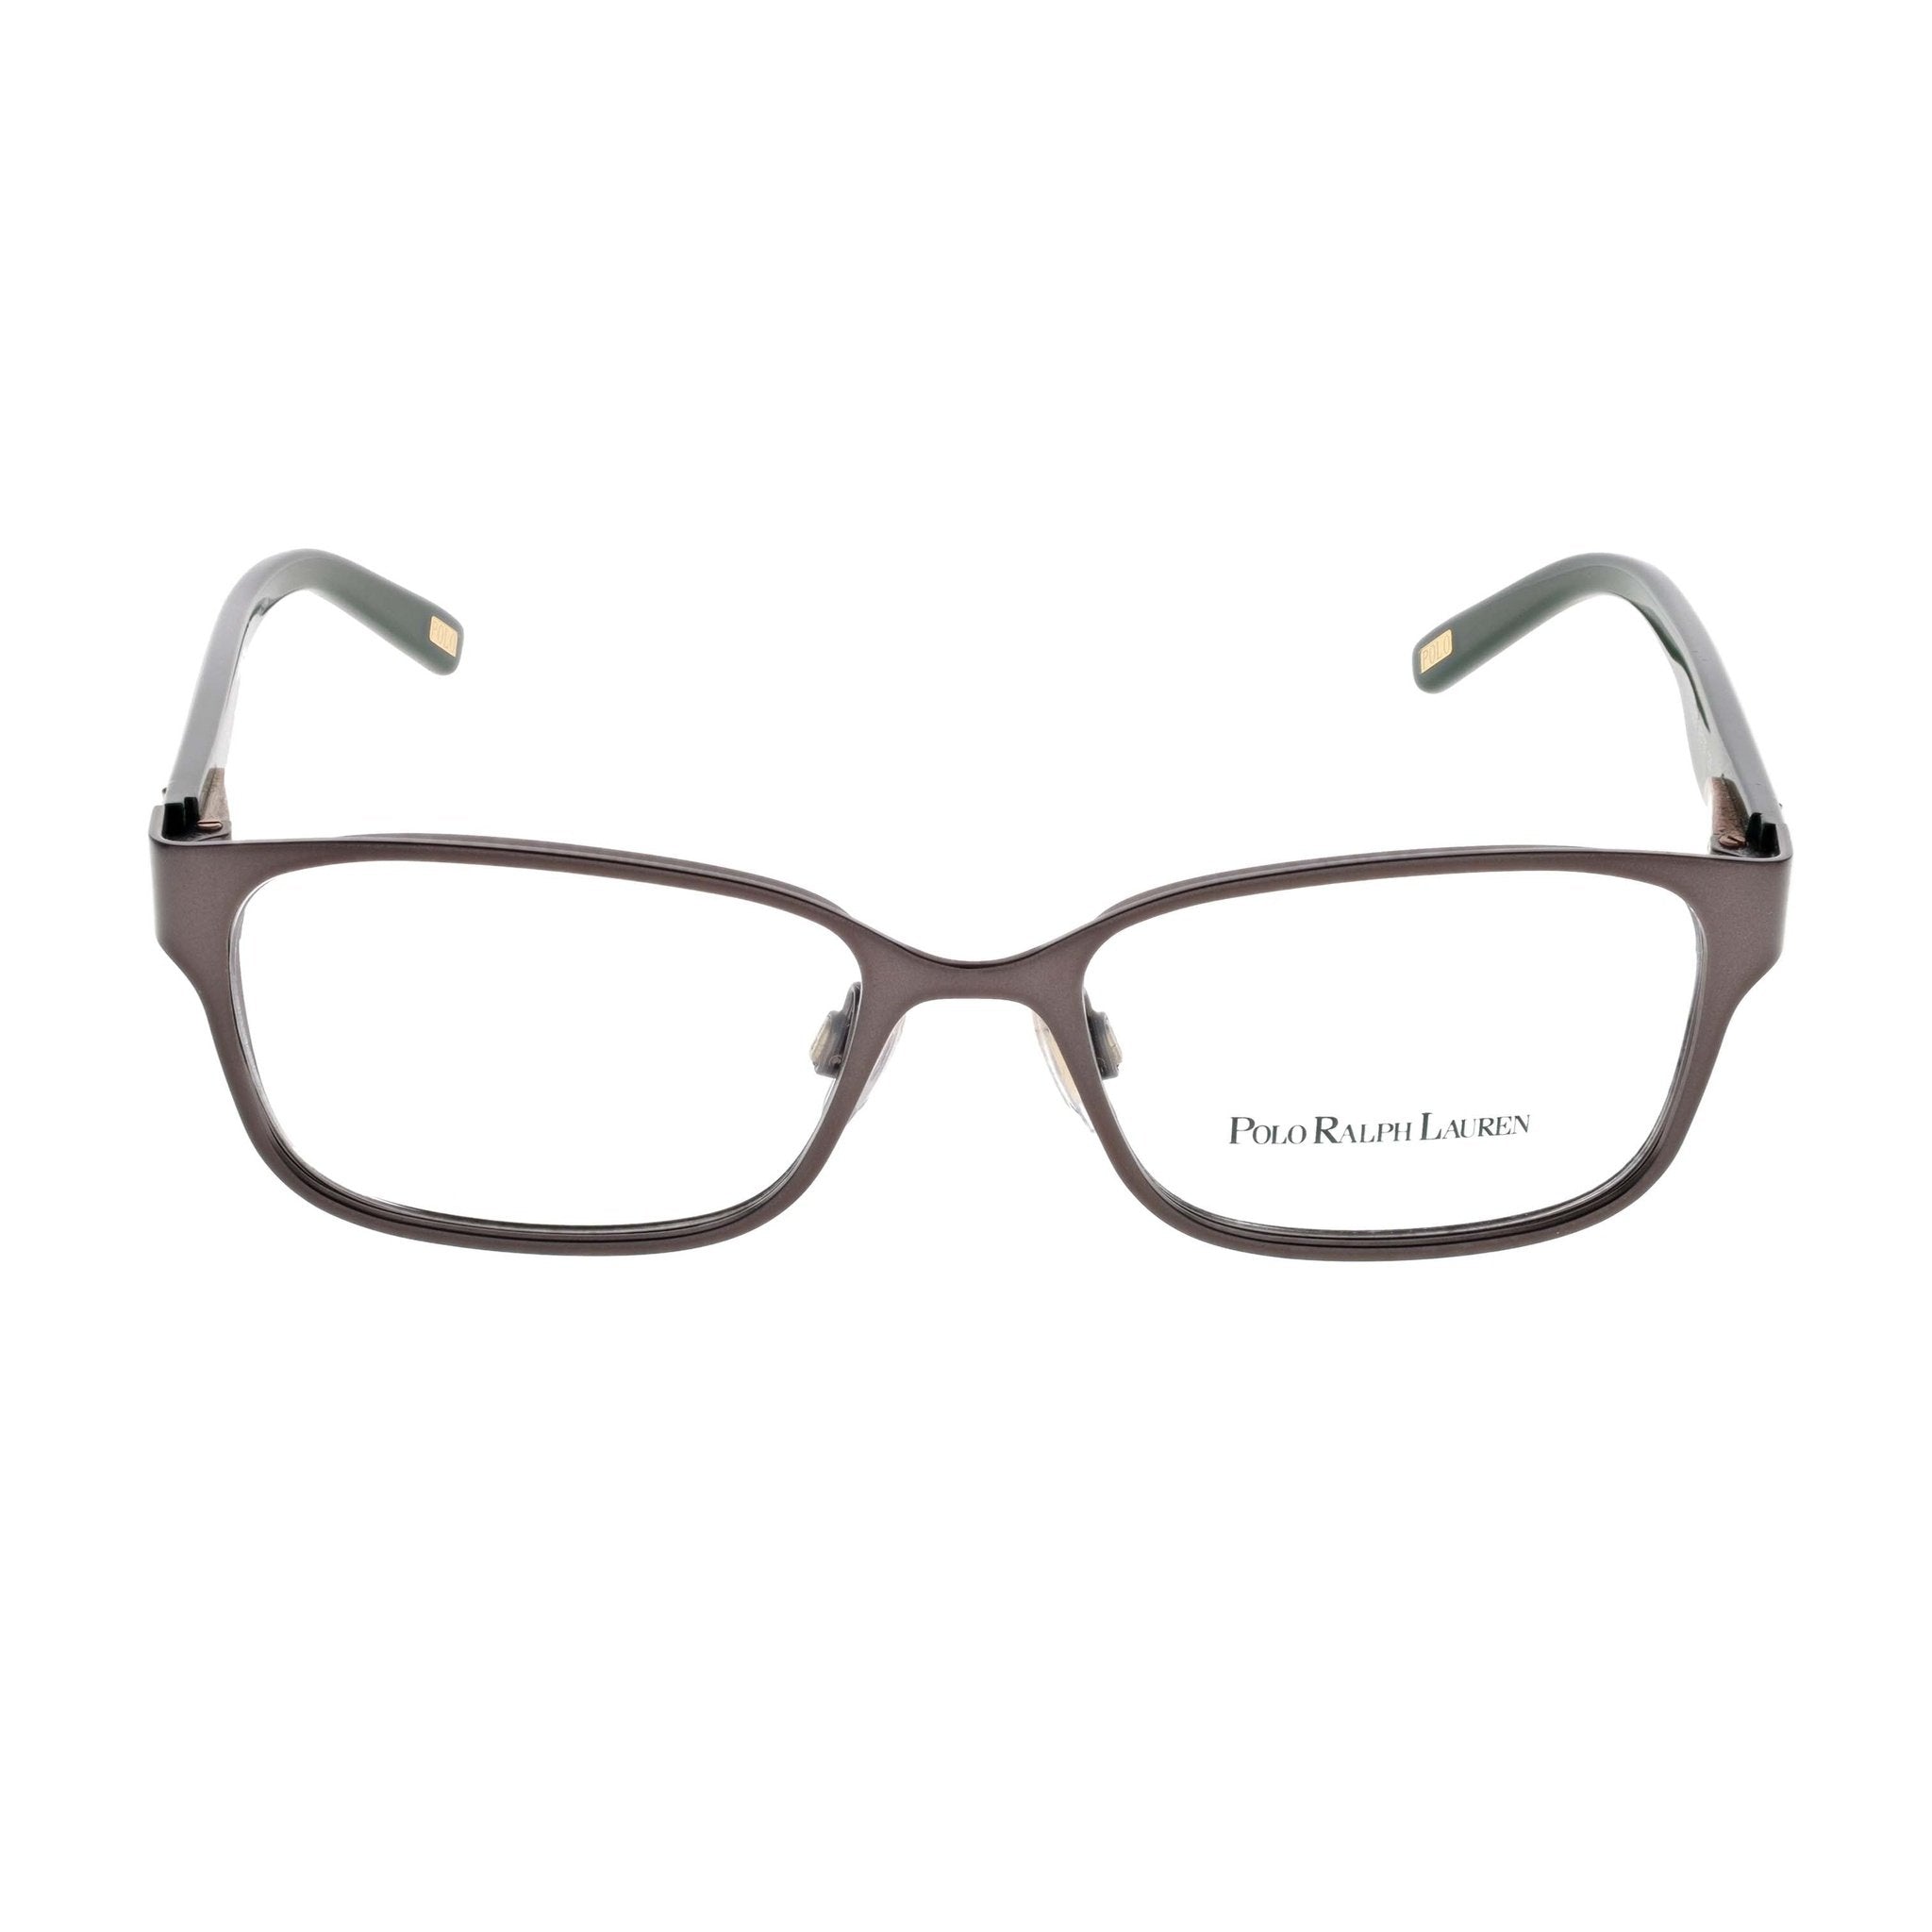 Polo Ralph Lauren Junior Eyeglasses - PP8032-508